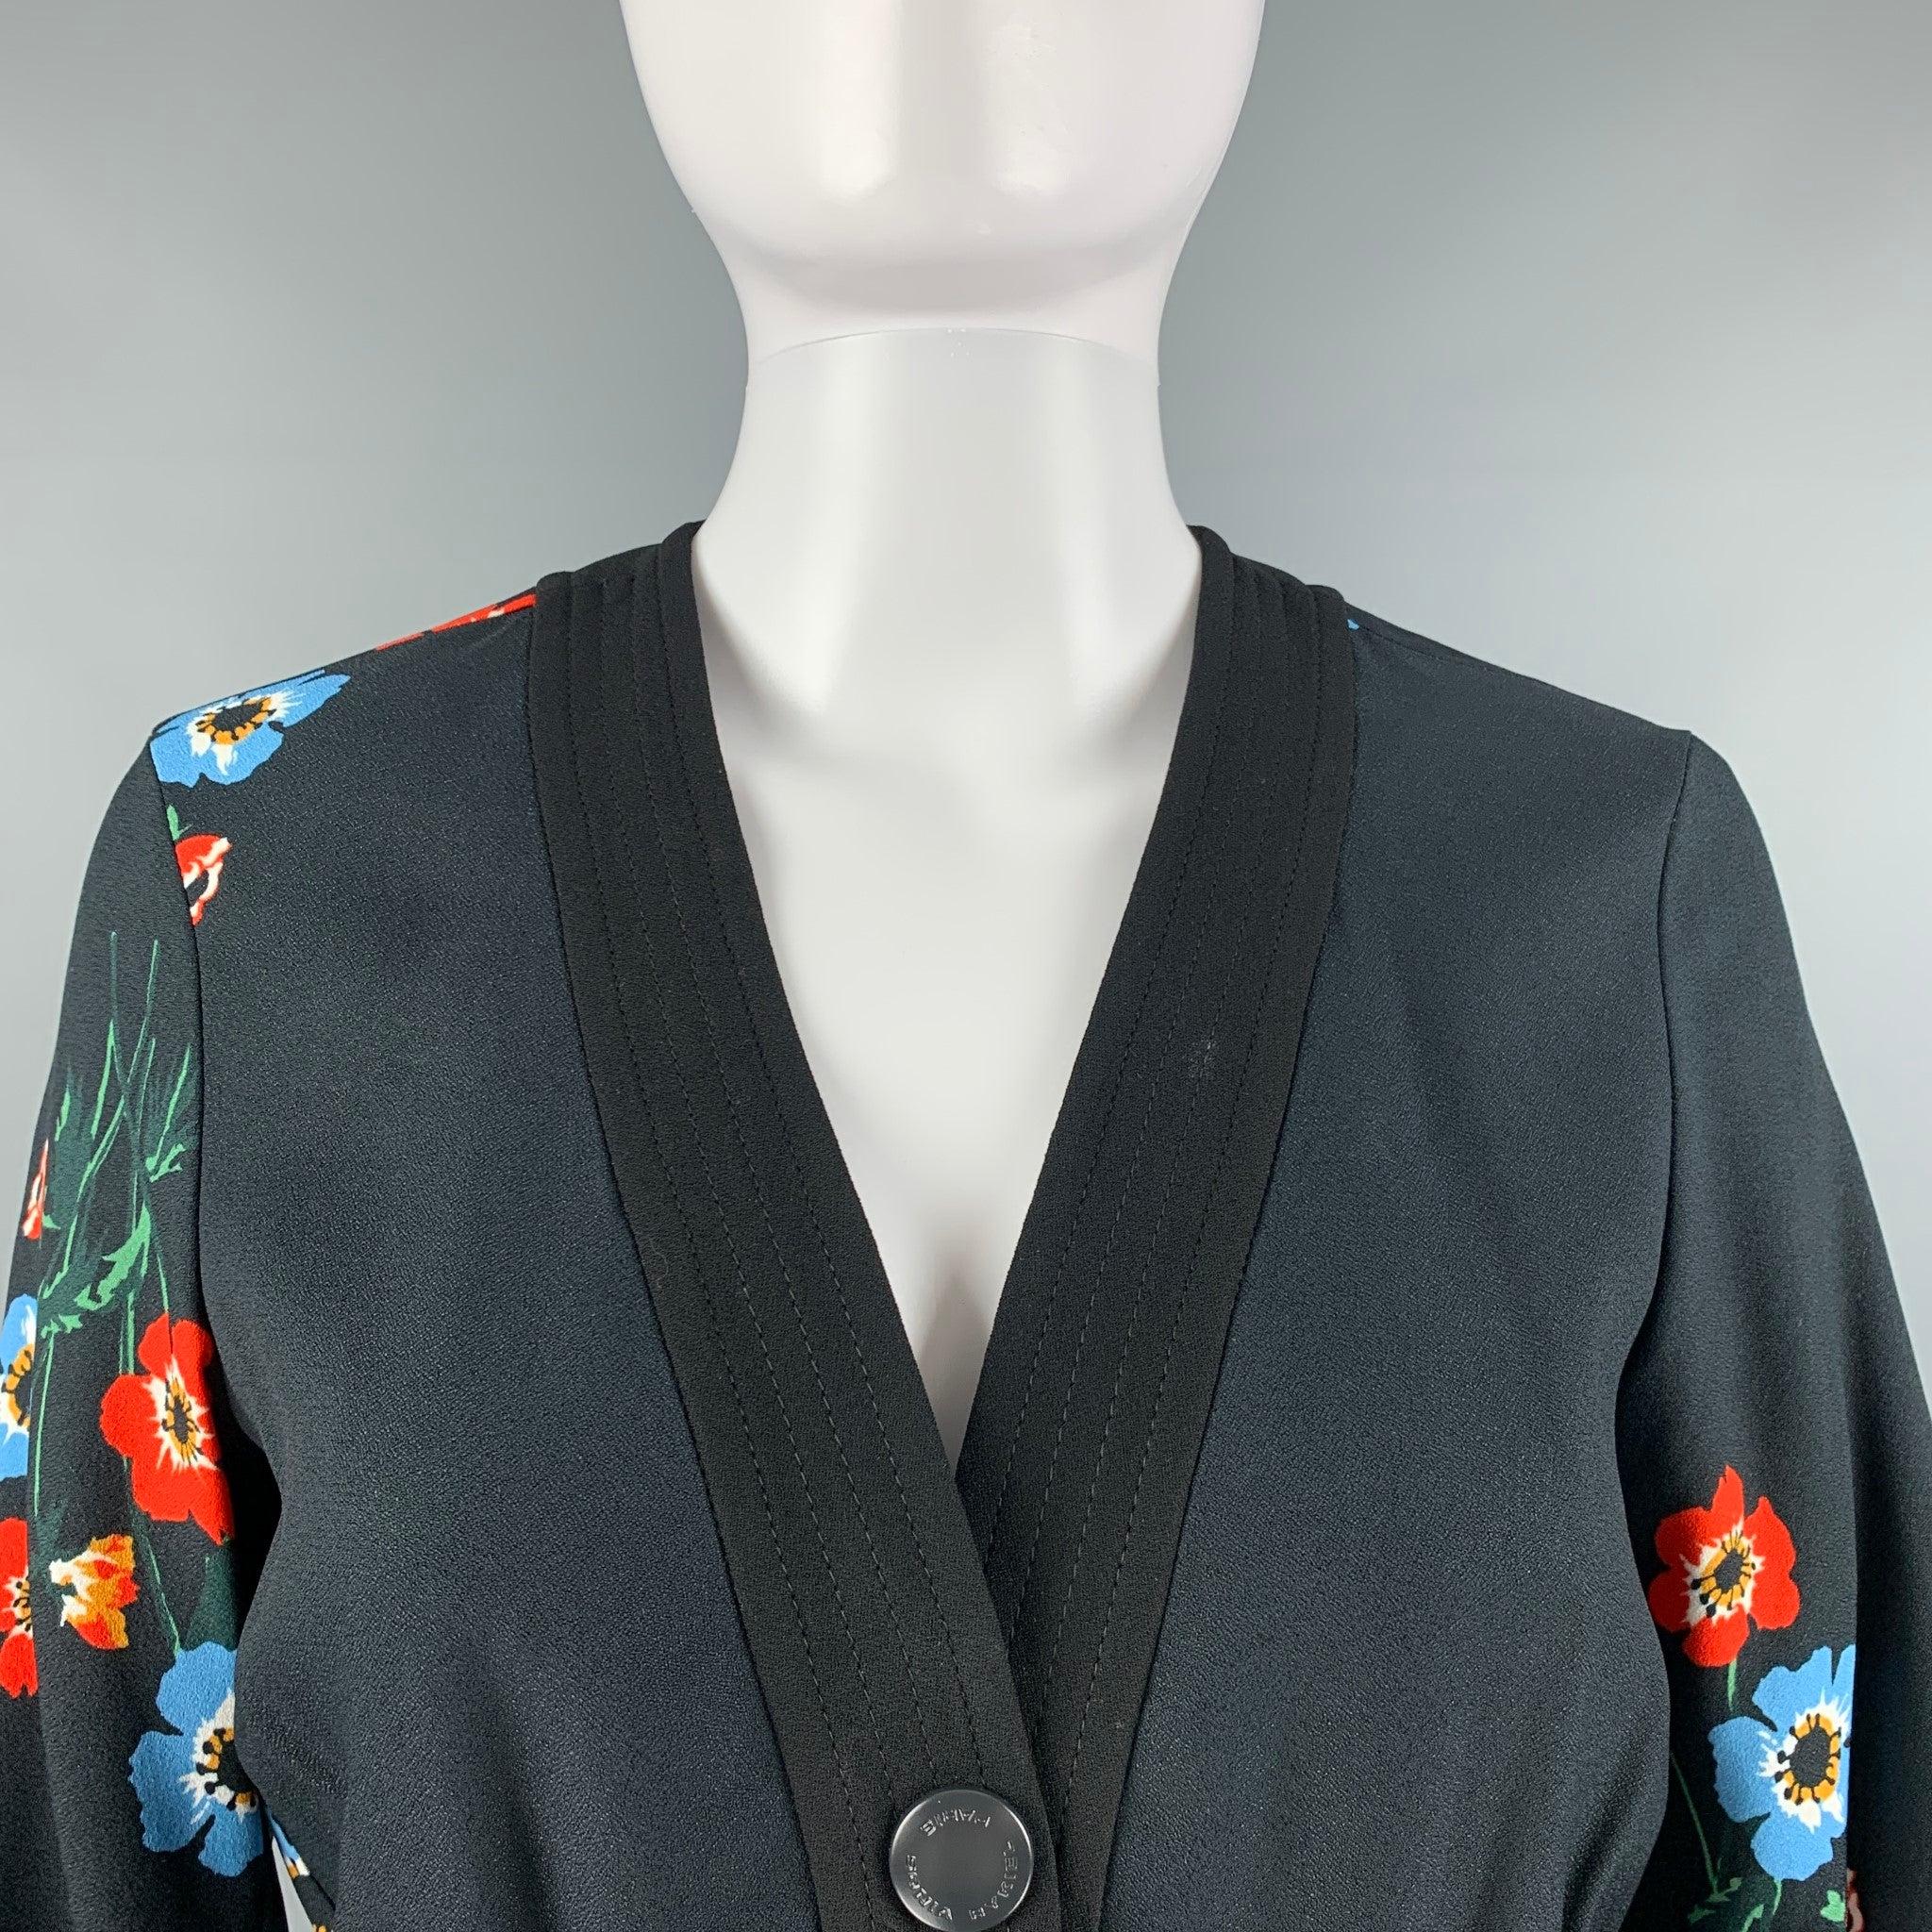 La robe à manches longues de SONIA RYKIEL se compose d'une matière tissée en viscose florale noire et multicolore, d'une robe-chemise, d'une taille élastique, de poches plaquées, d'une encolure en V et d'une fermeture à bouton-pression sur le